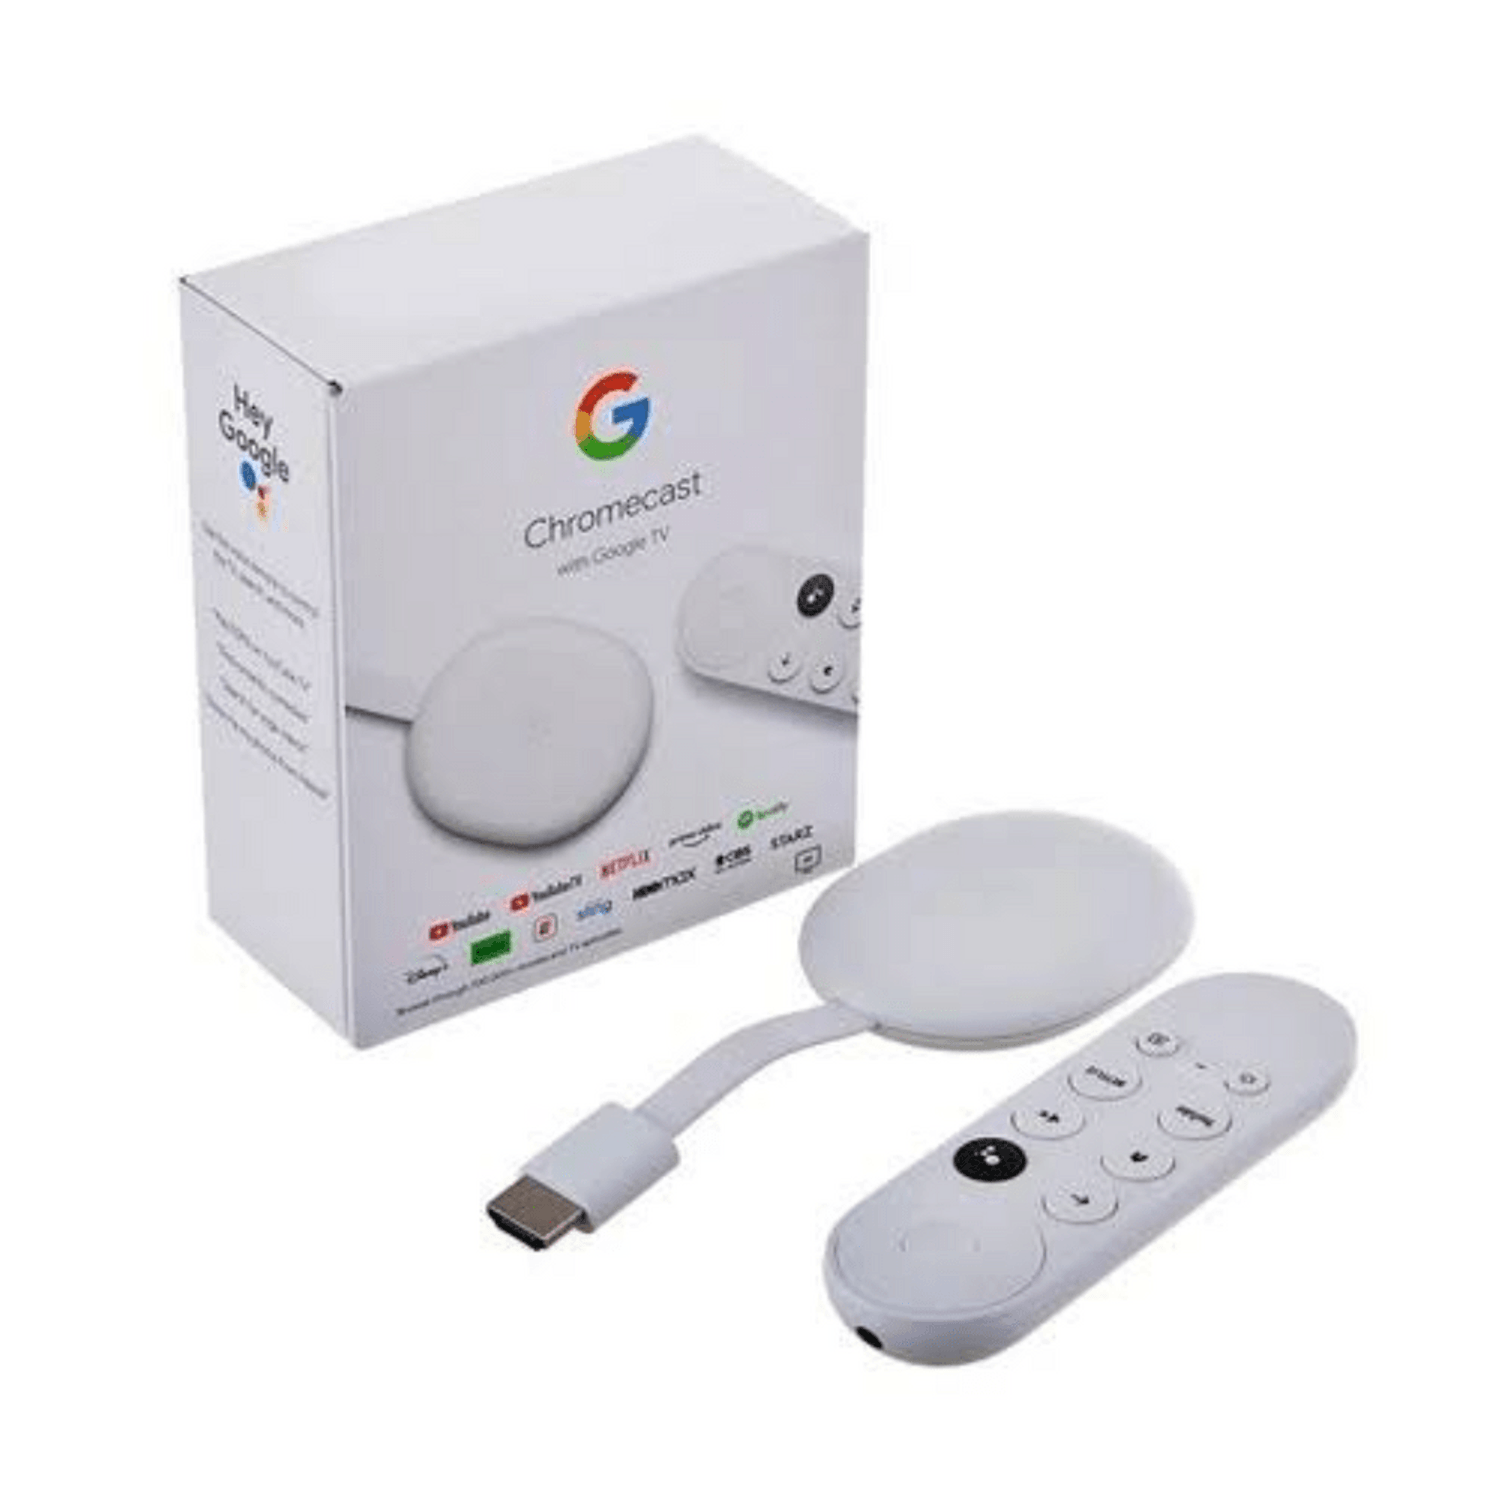 Descubre los beneficios y características del Chromecast